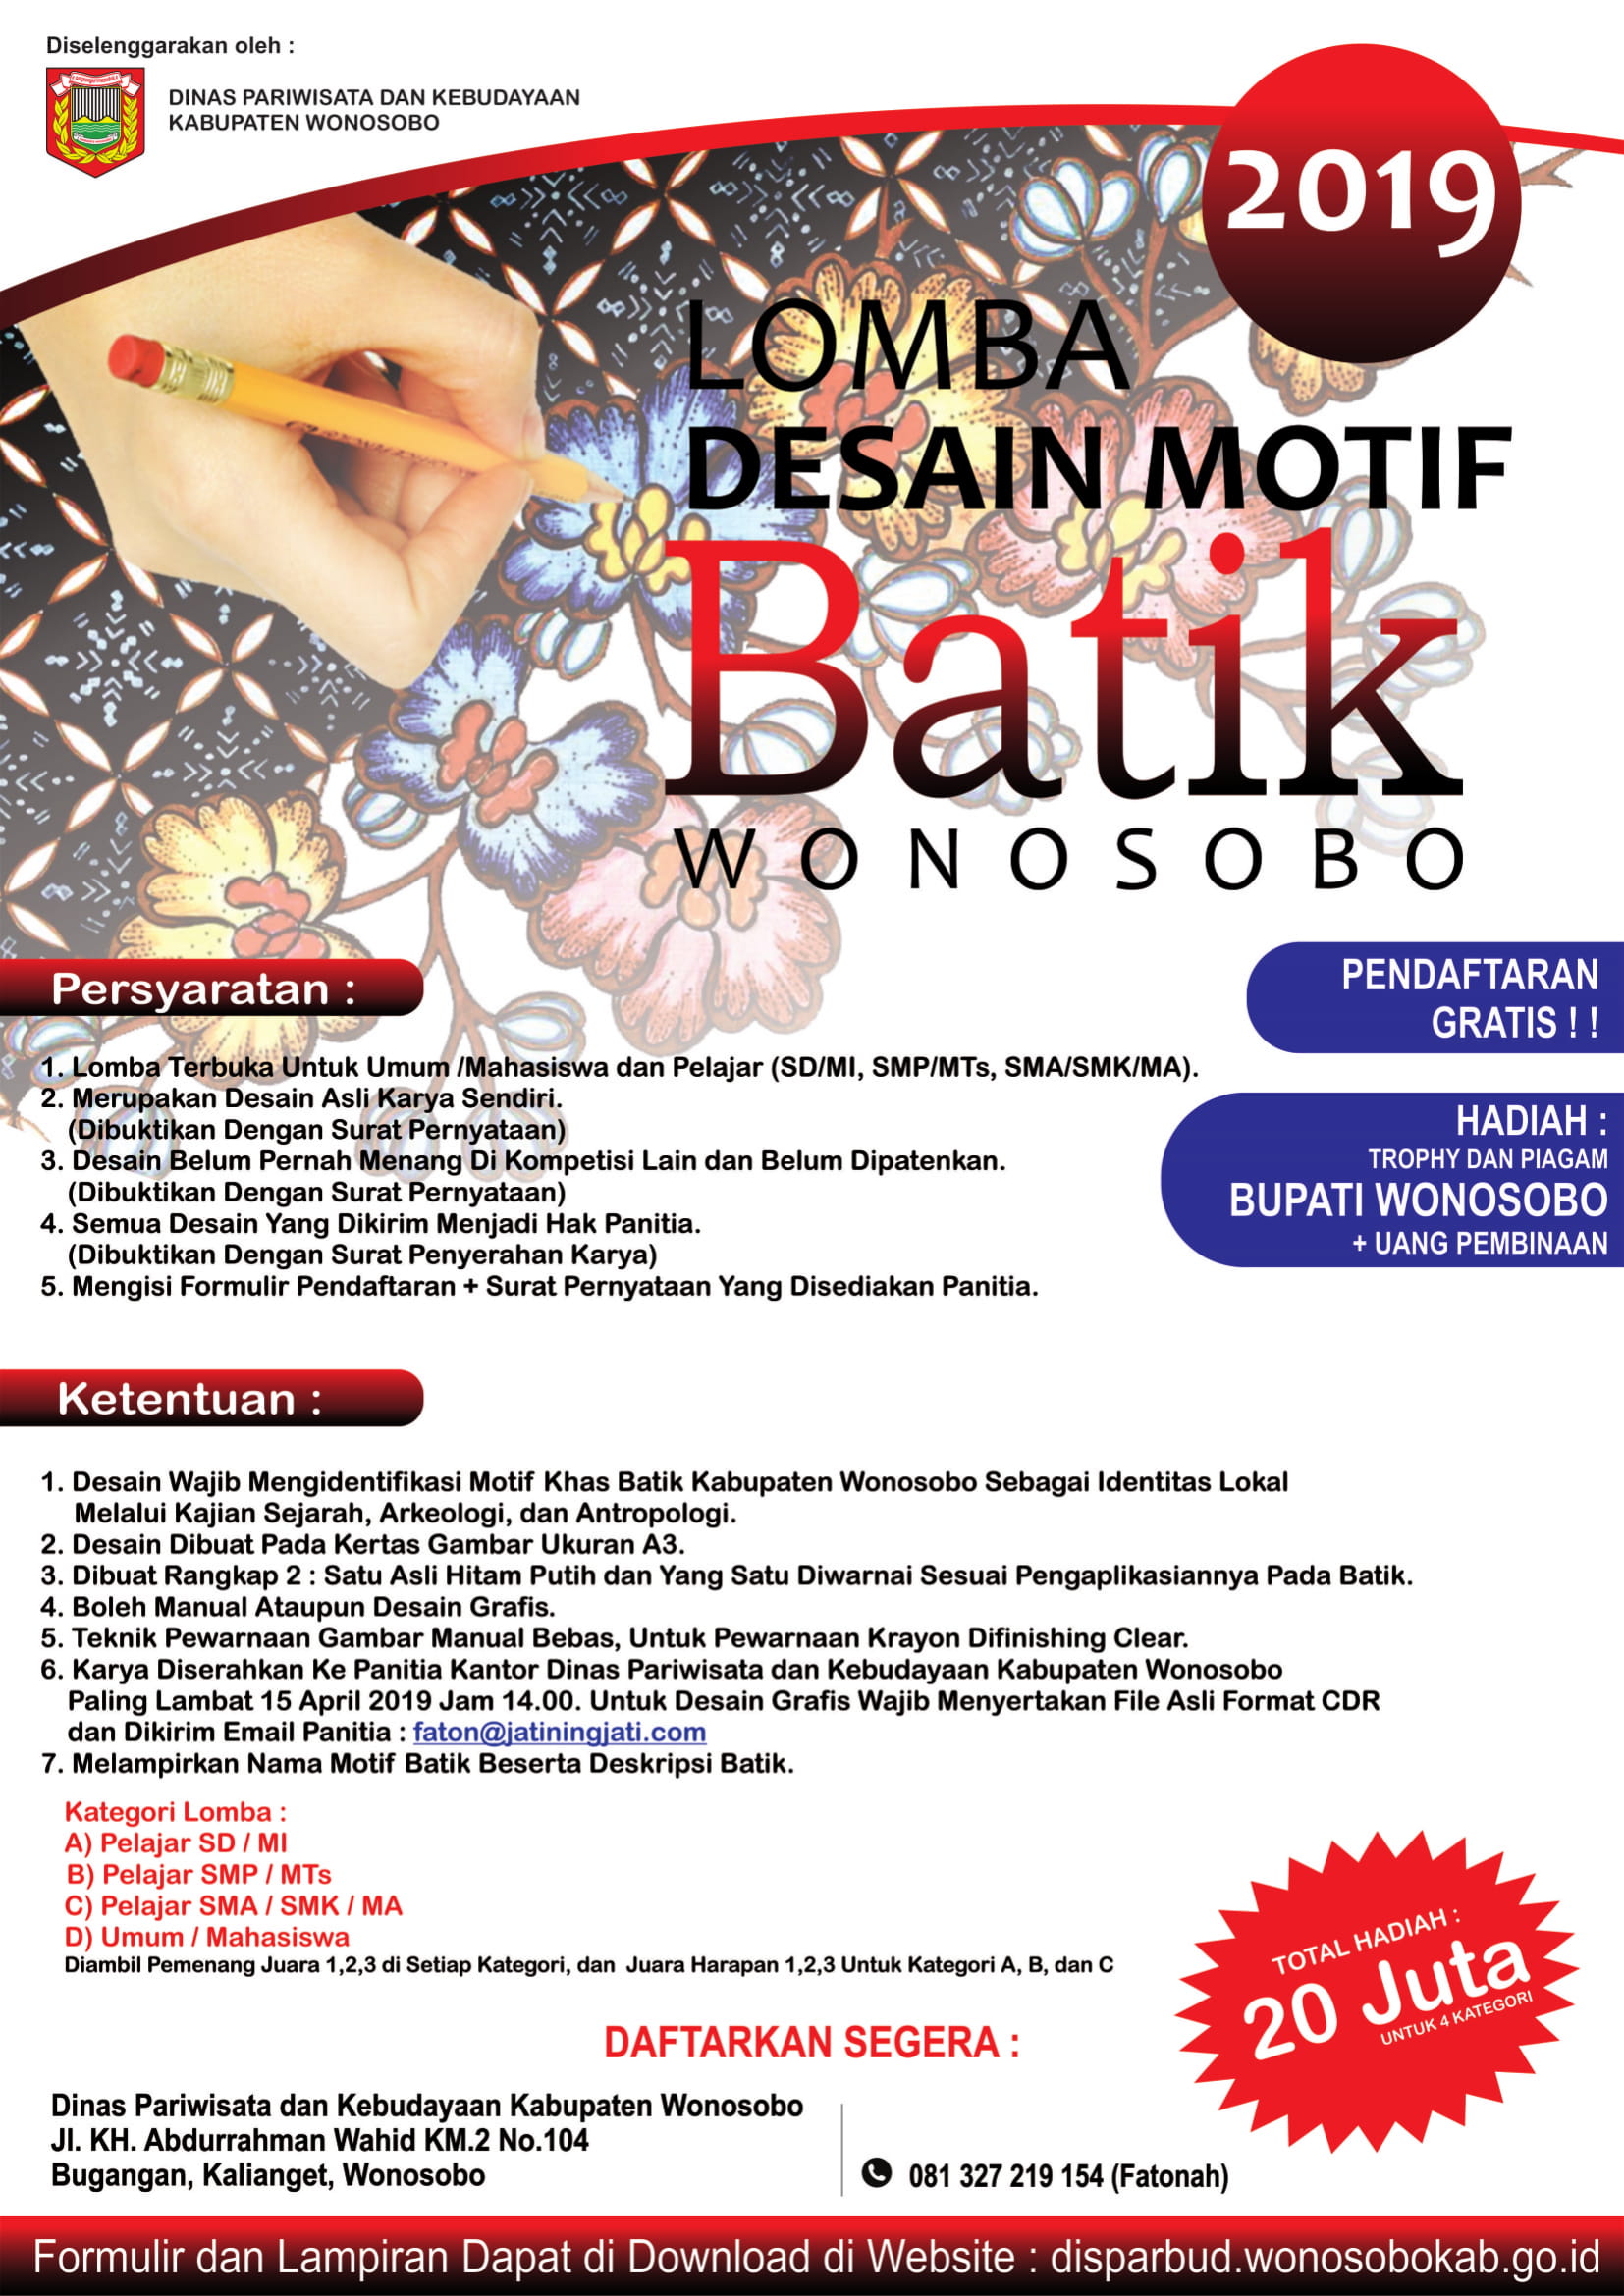 64 Gambar Batik Wonosobo Paling Keren